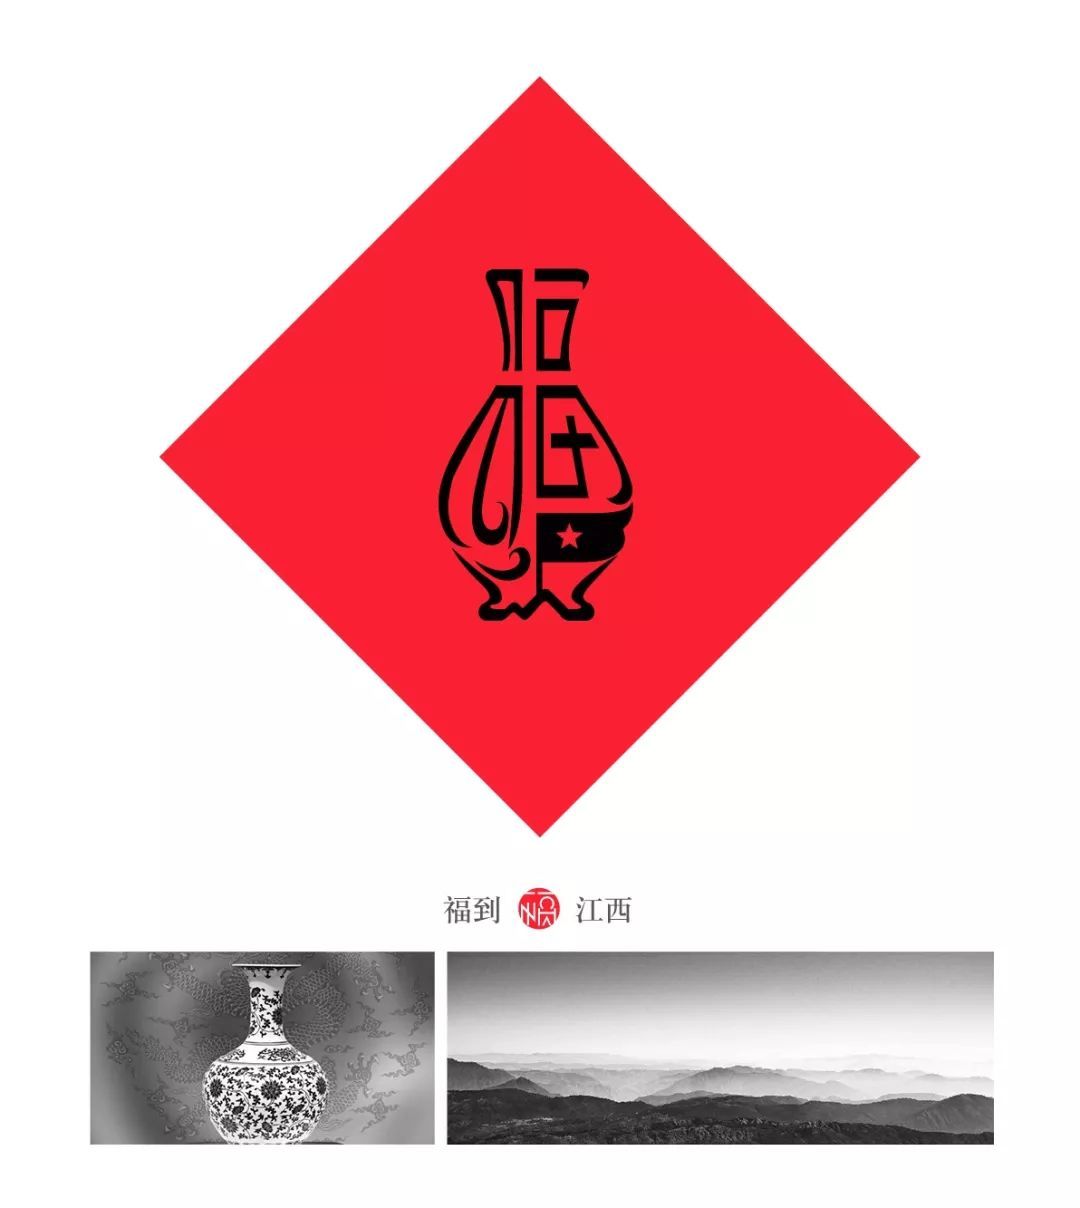 梵文福字符号图片